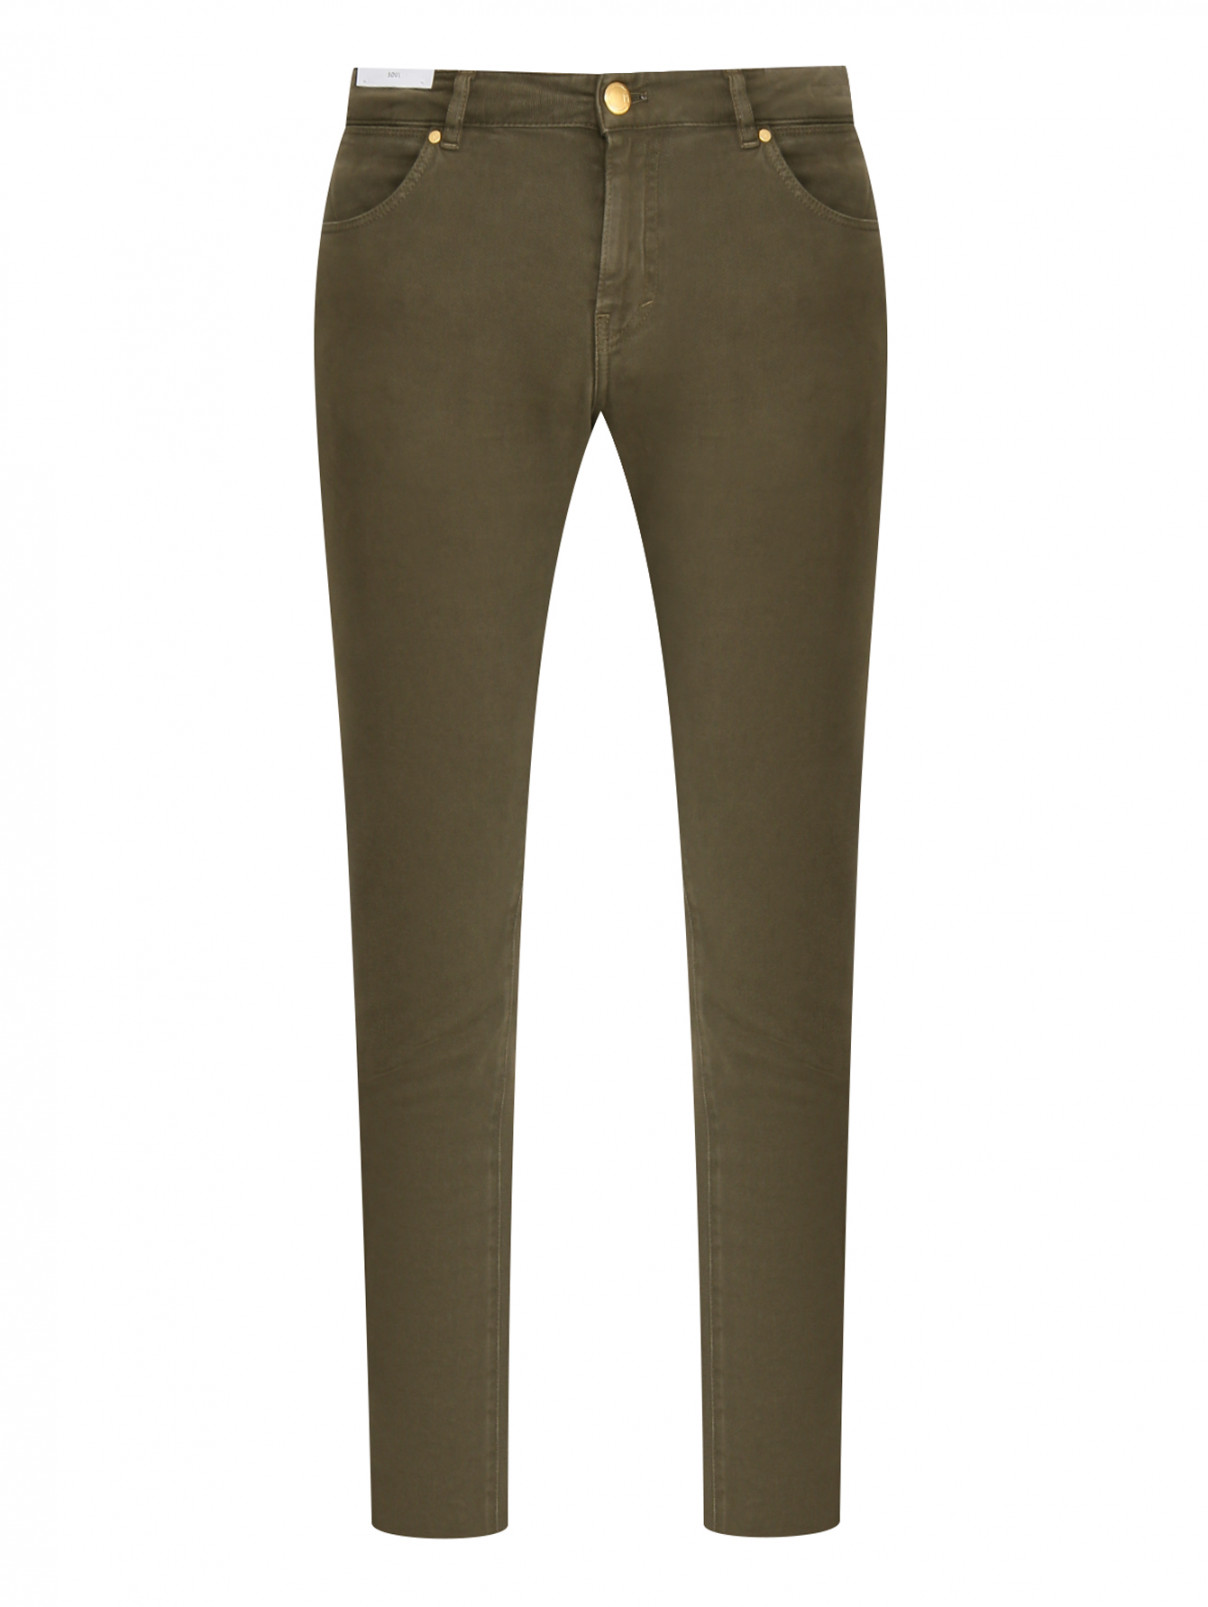 Однотонные брюки из хлопка PT Torino  –  Общий вид  – Цвет:  Зеленый